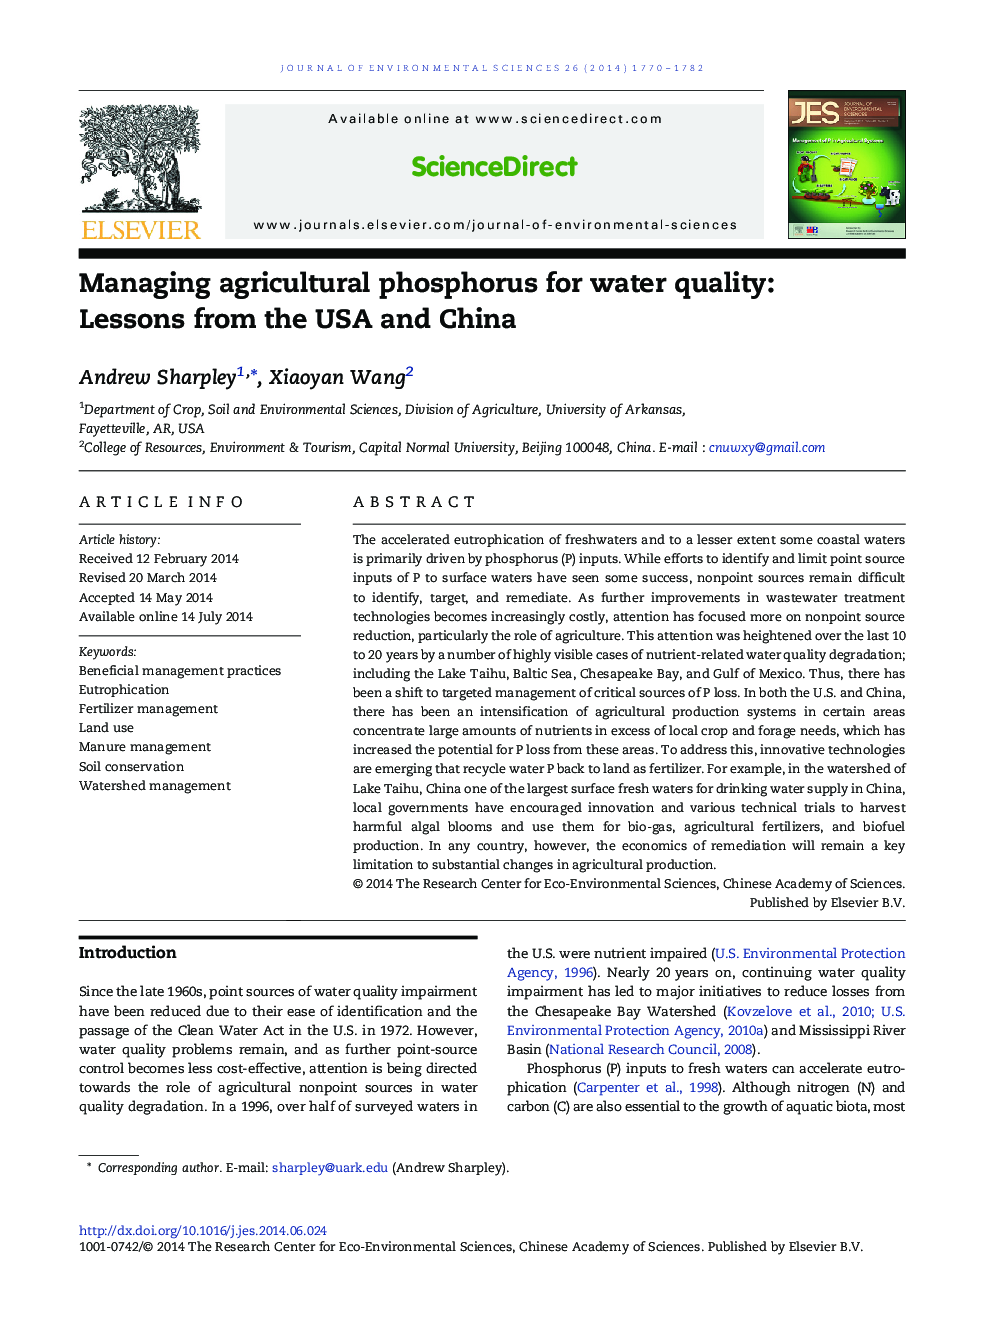 مدیریت فسفر کشاورزی برای کیفیت آب: درس های ایالات متحده آمریکا و چین 